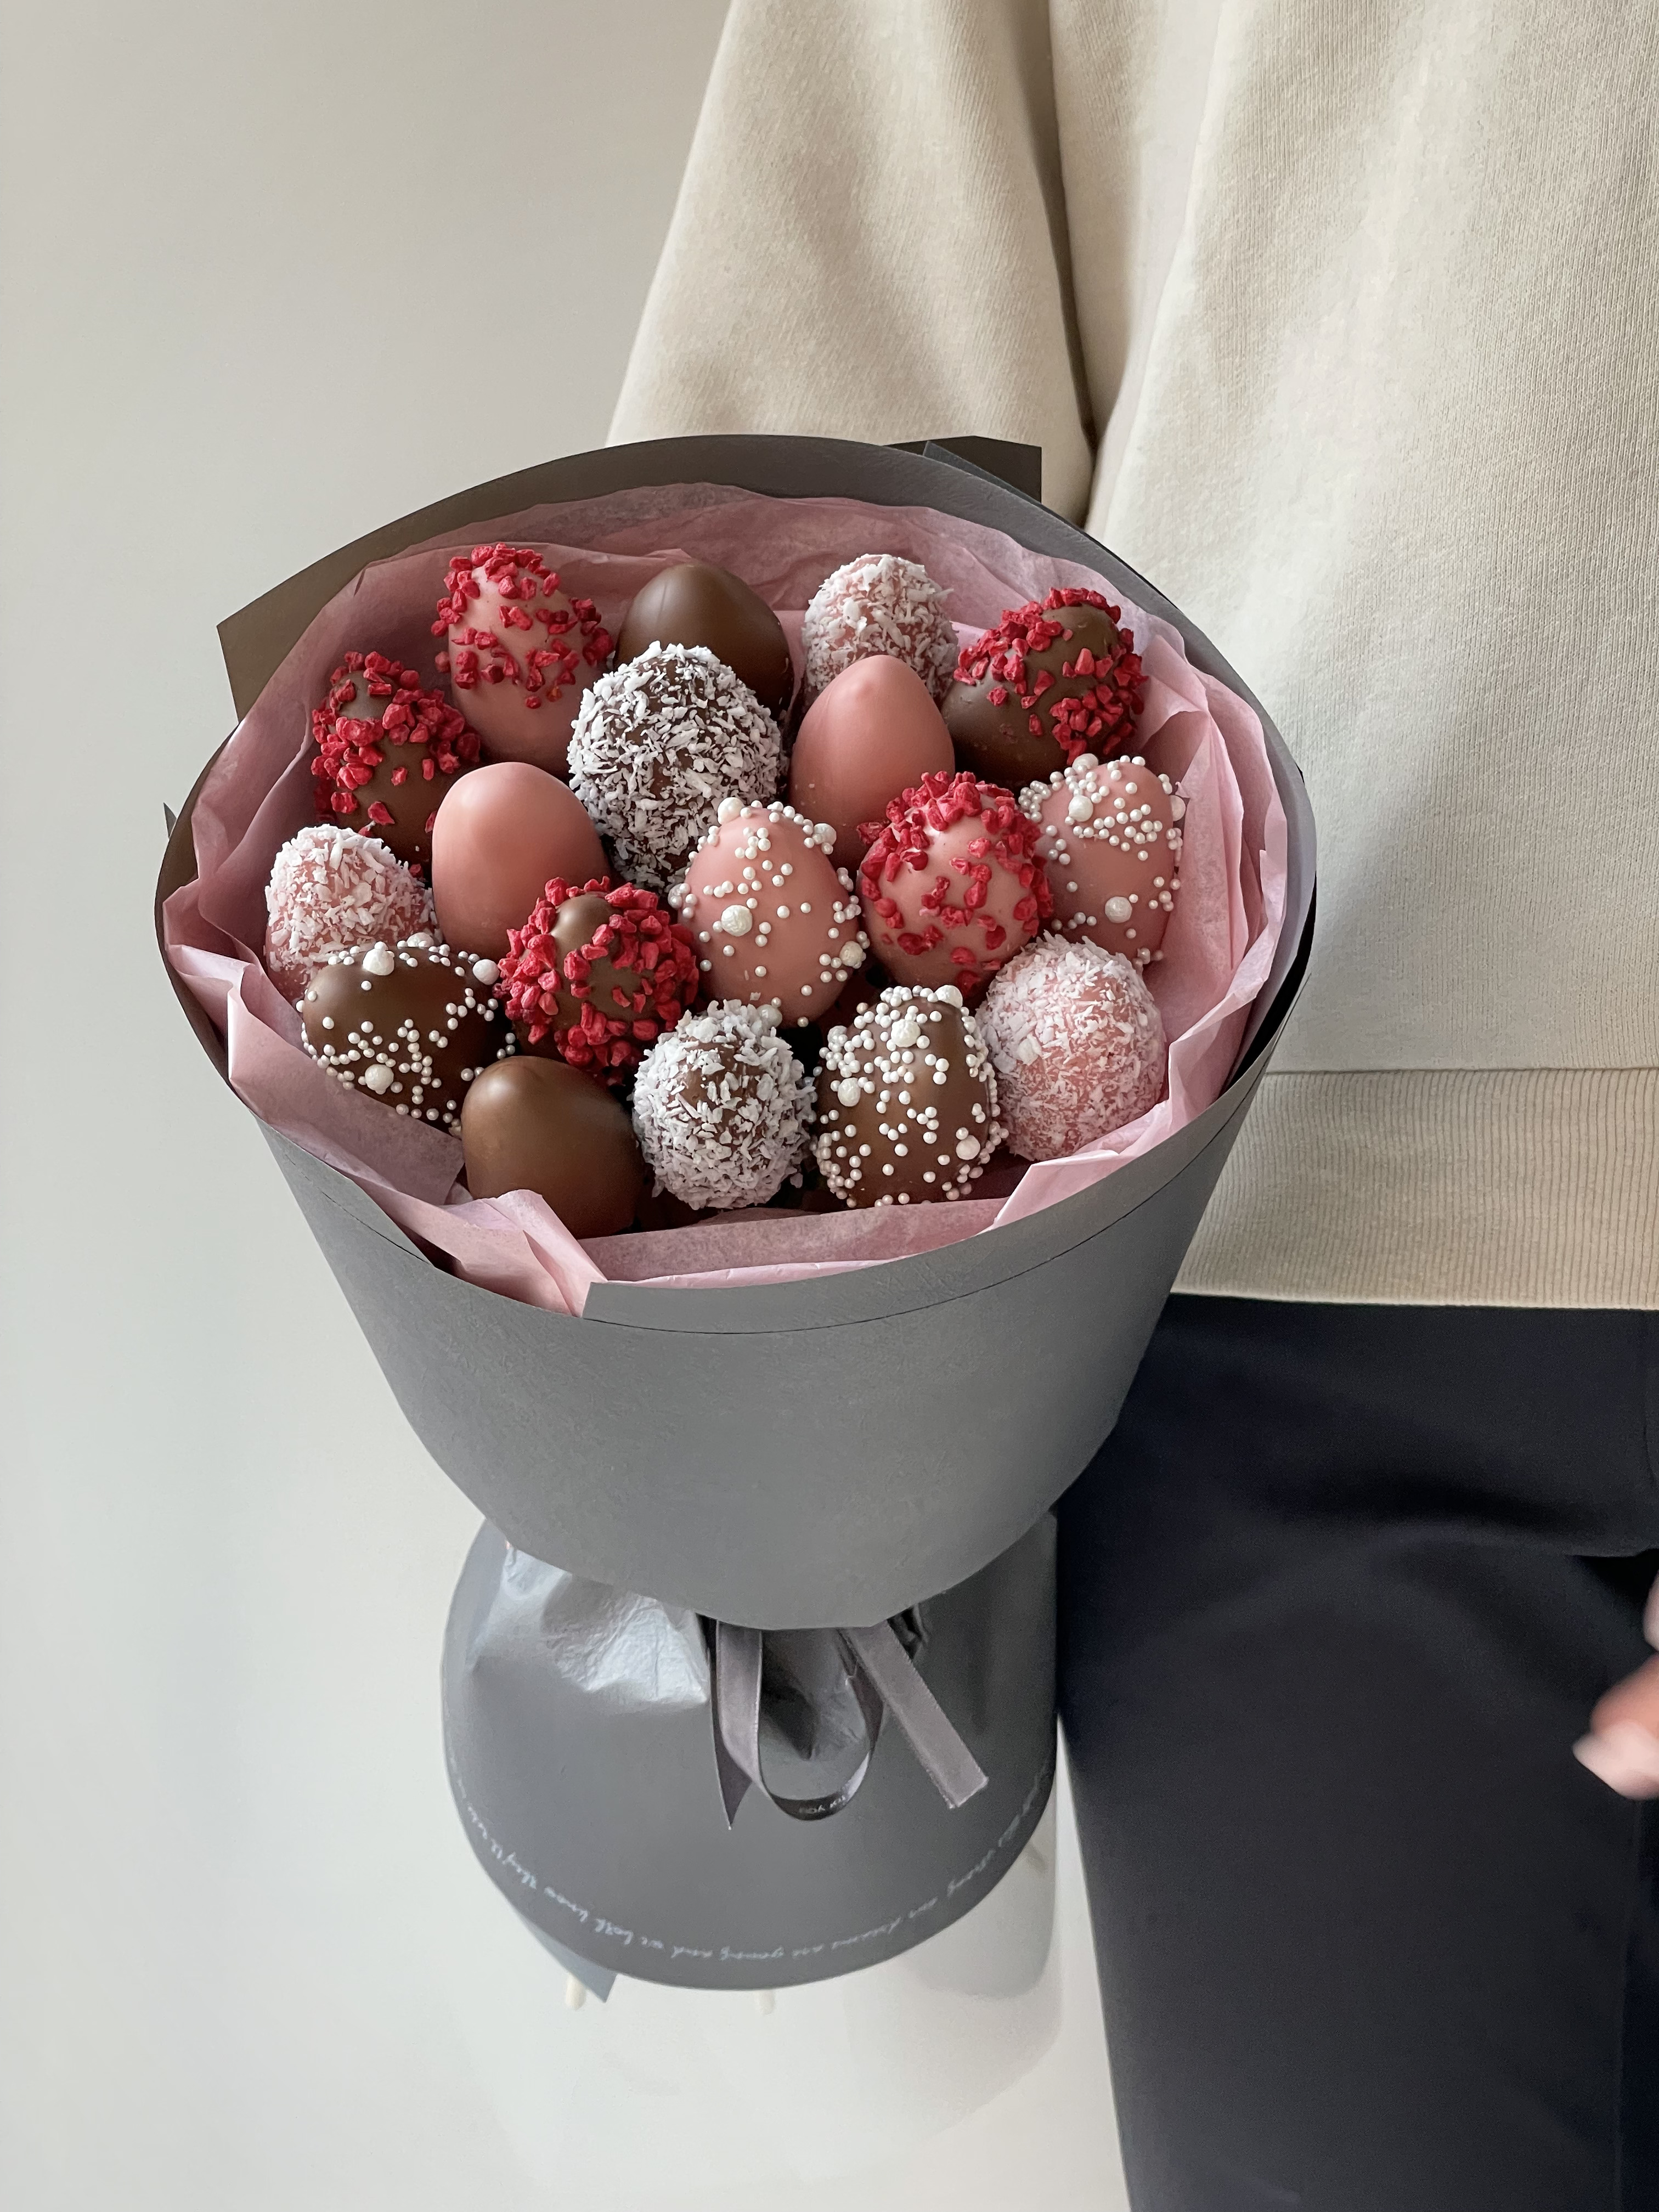  Клубничный букет «Меркурий» клубника в розовом и молочном шоколаде